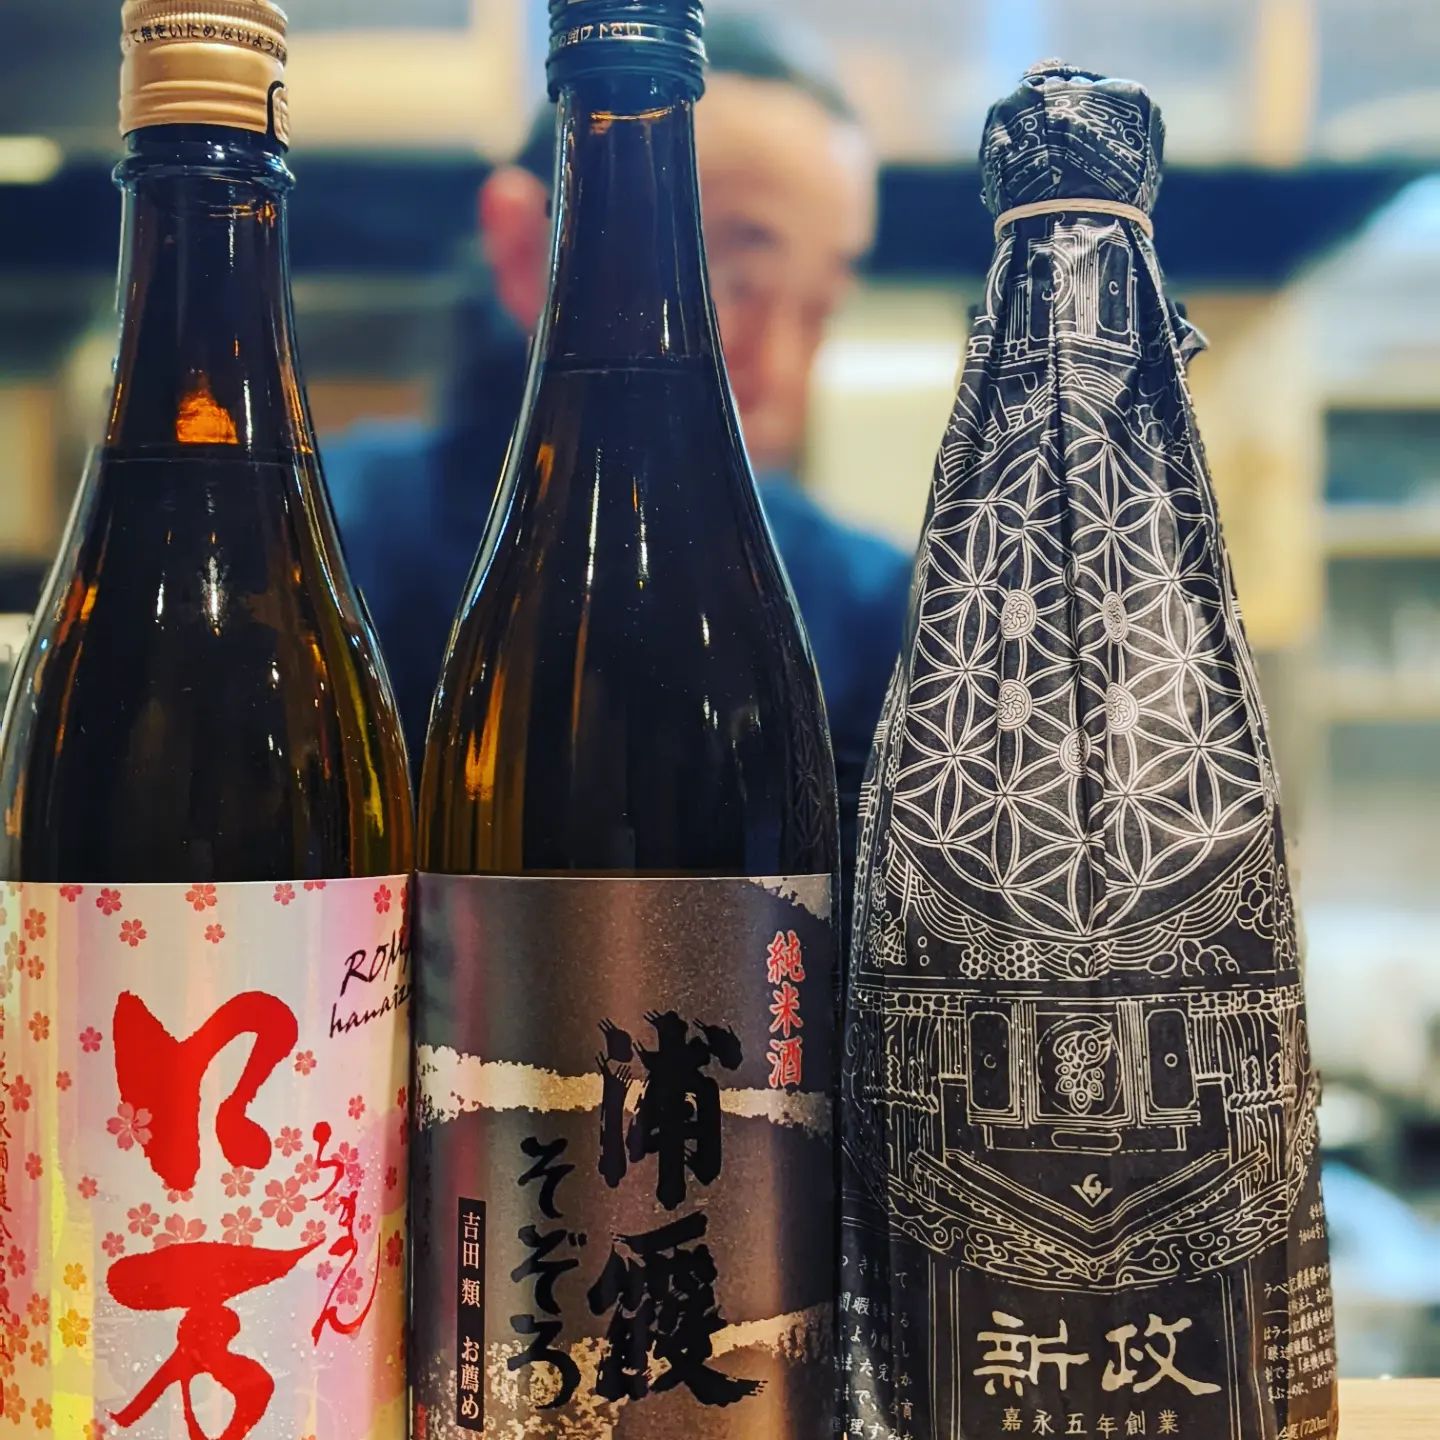 今夜のおすすめ日本酒は、花見ロ万。そして吉田類さんおすすめ浦霞。スッキリと飲みやすい、燗もおすすめです。新政をオススメに書くのは珍しいことですが、こちらは2019年生酛木桶純米です。 (Instagram)